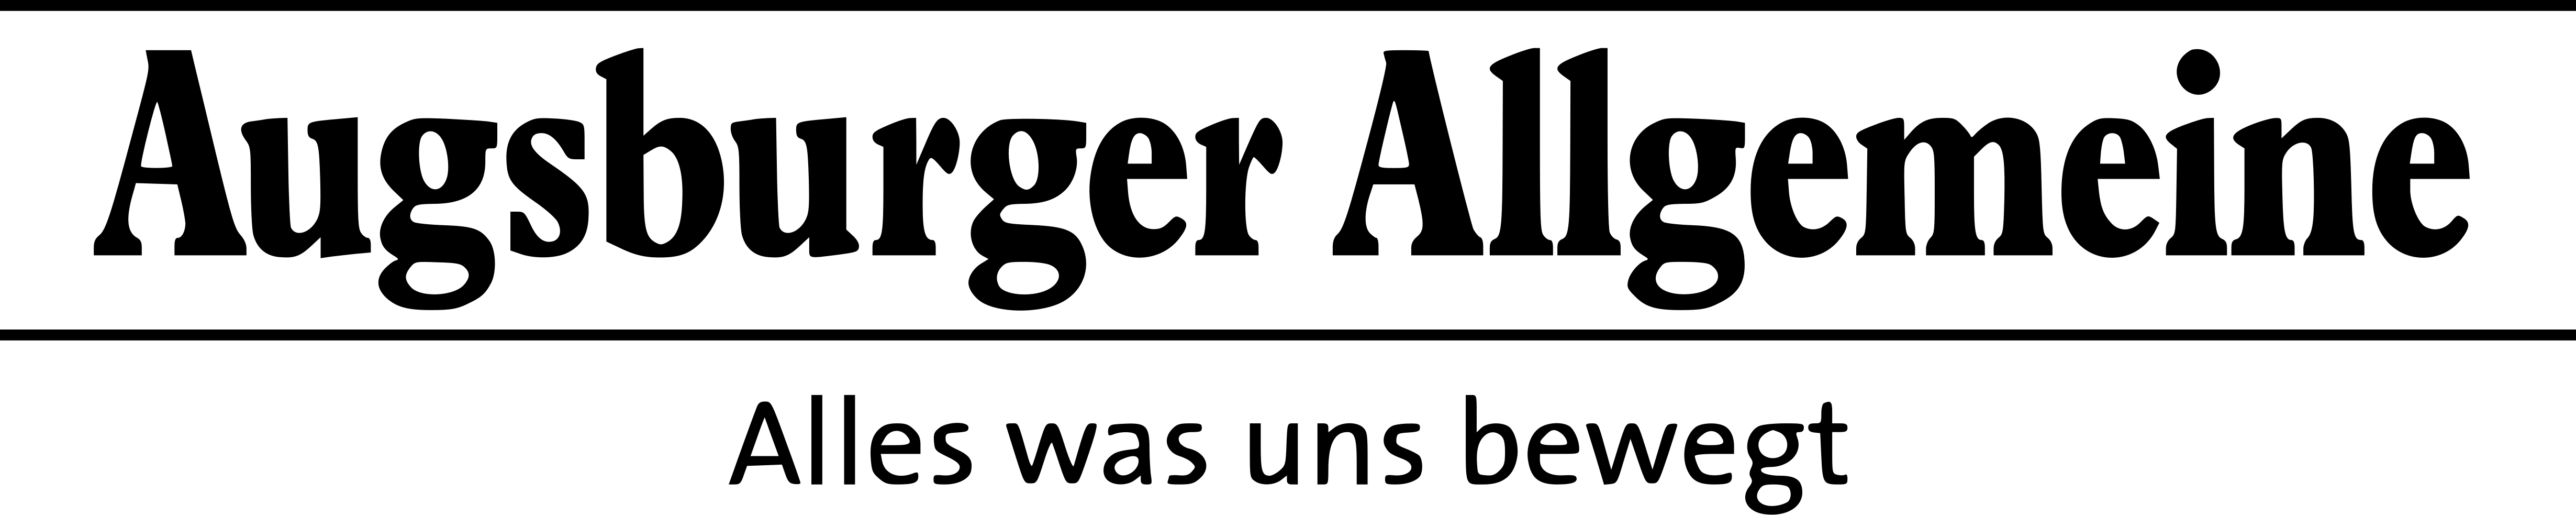 Augsburger Allgemeine Logo